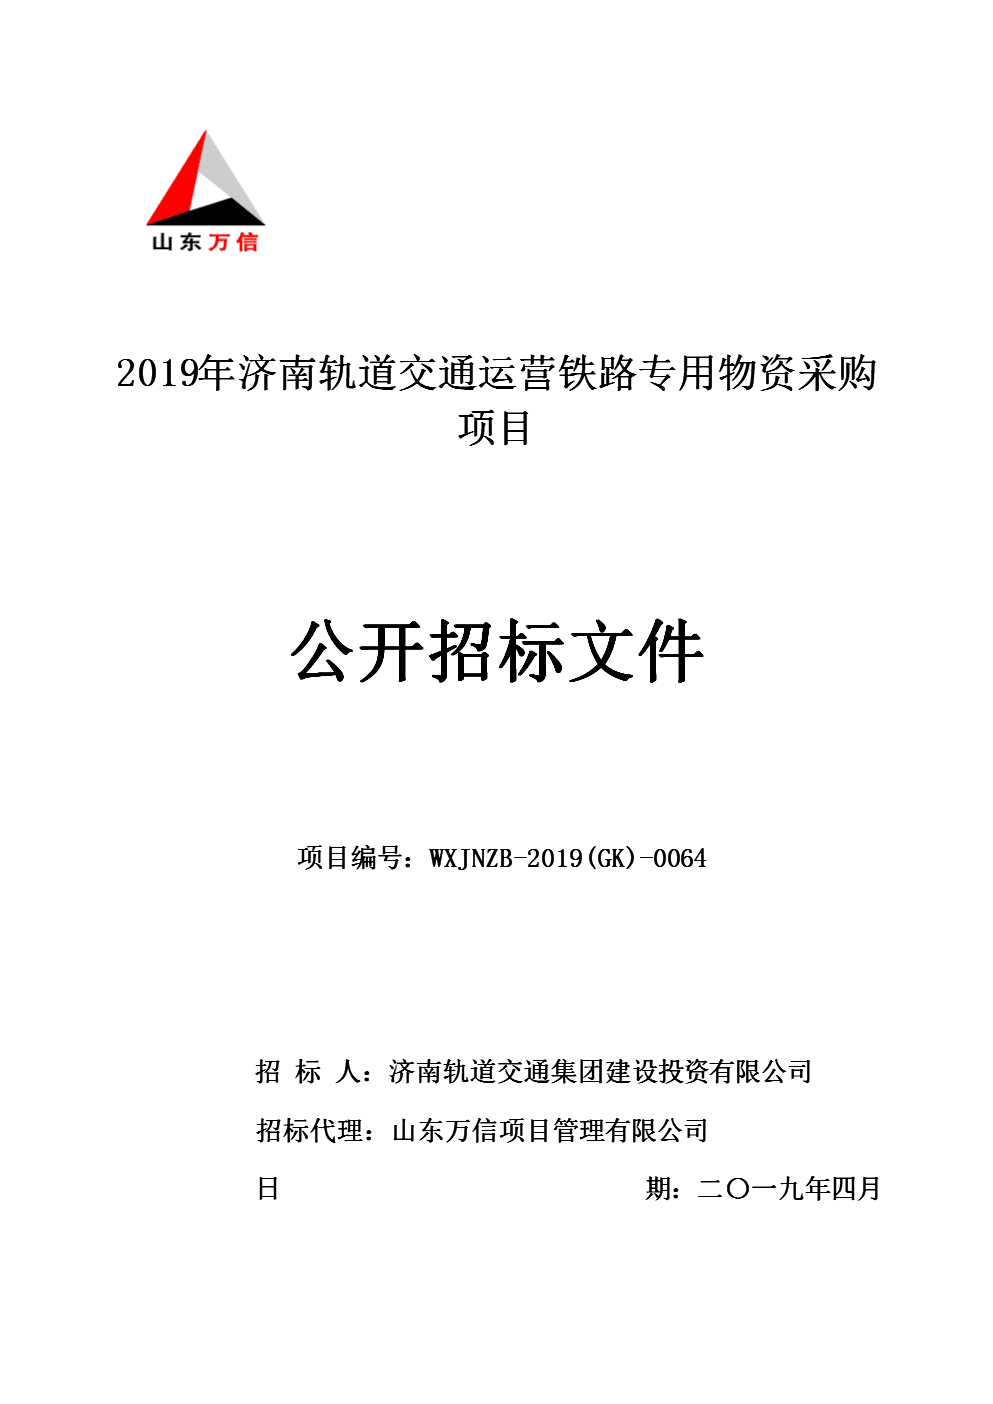 中铁bobty综合体育上海局集团有限公司TFDS集中运营平台升级招标公告